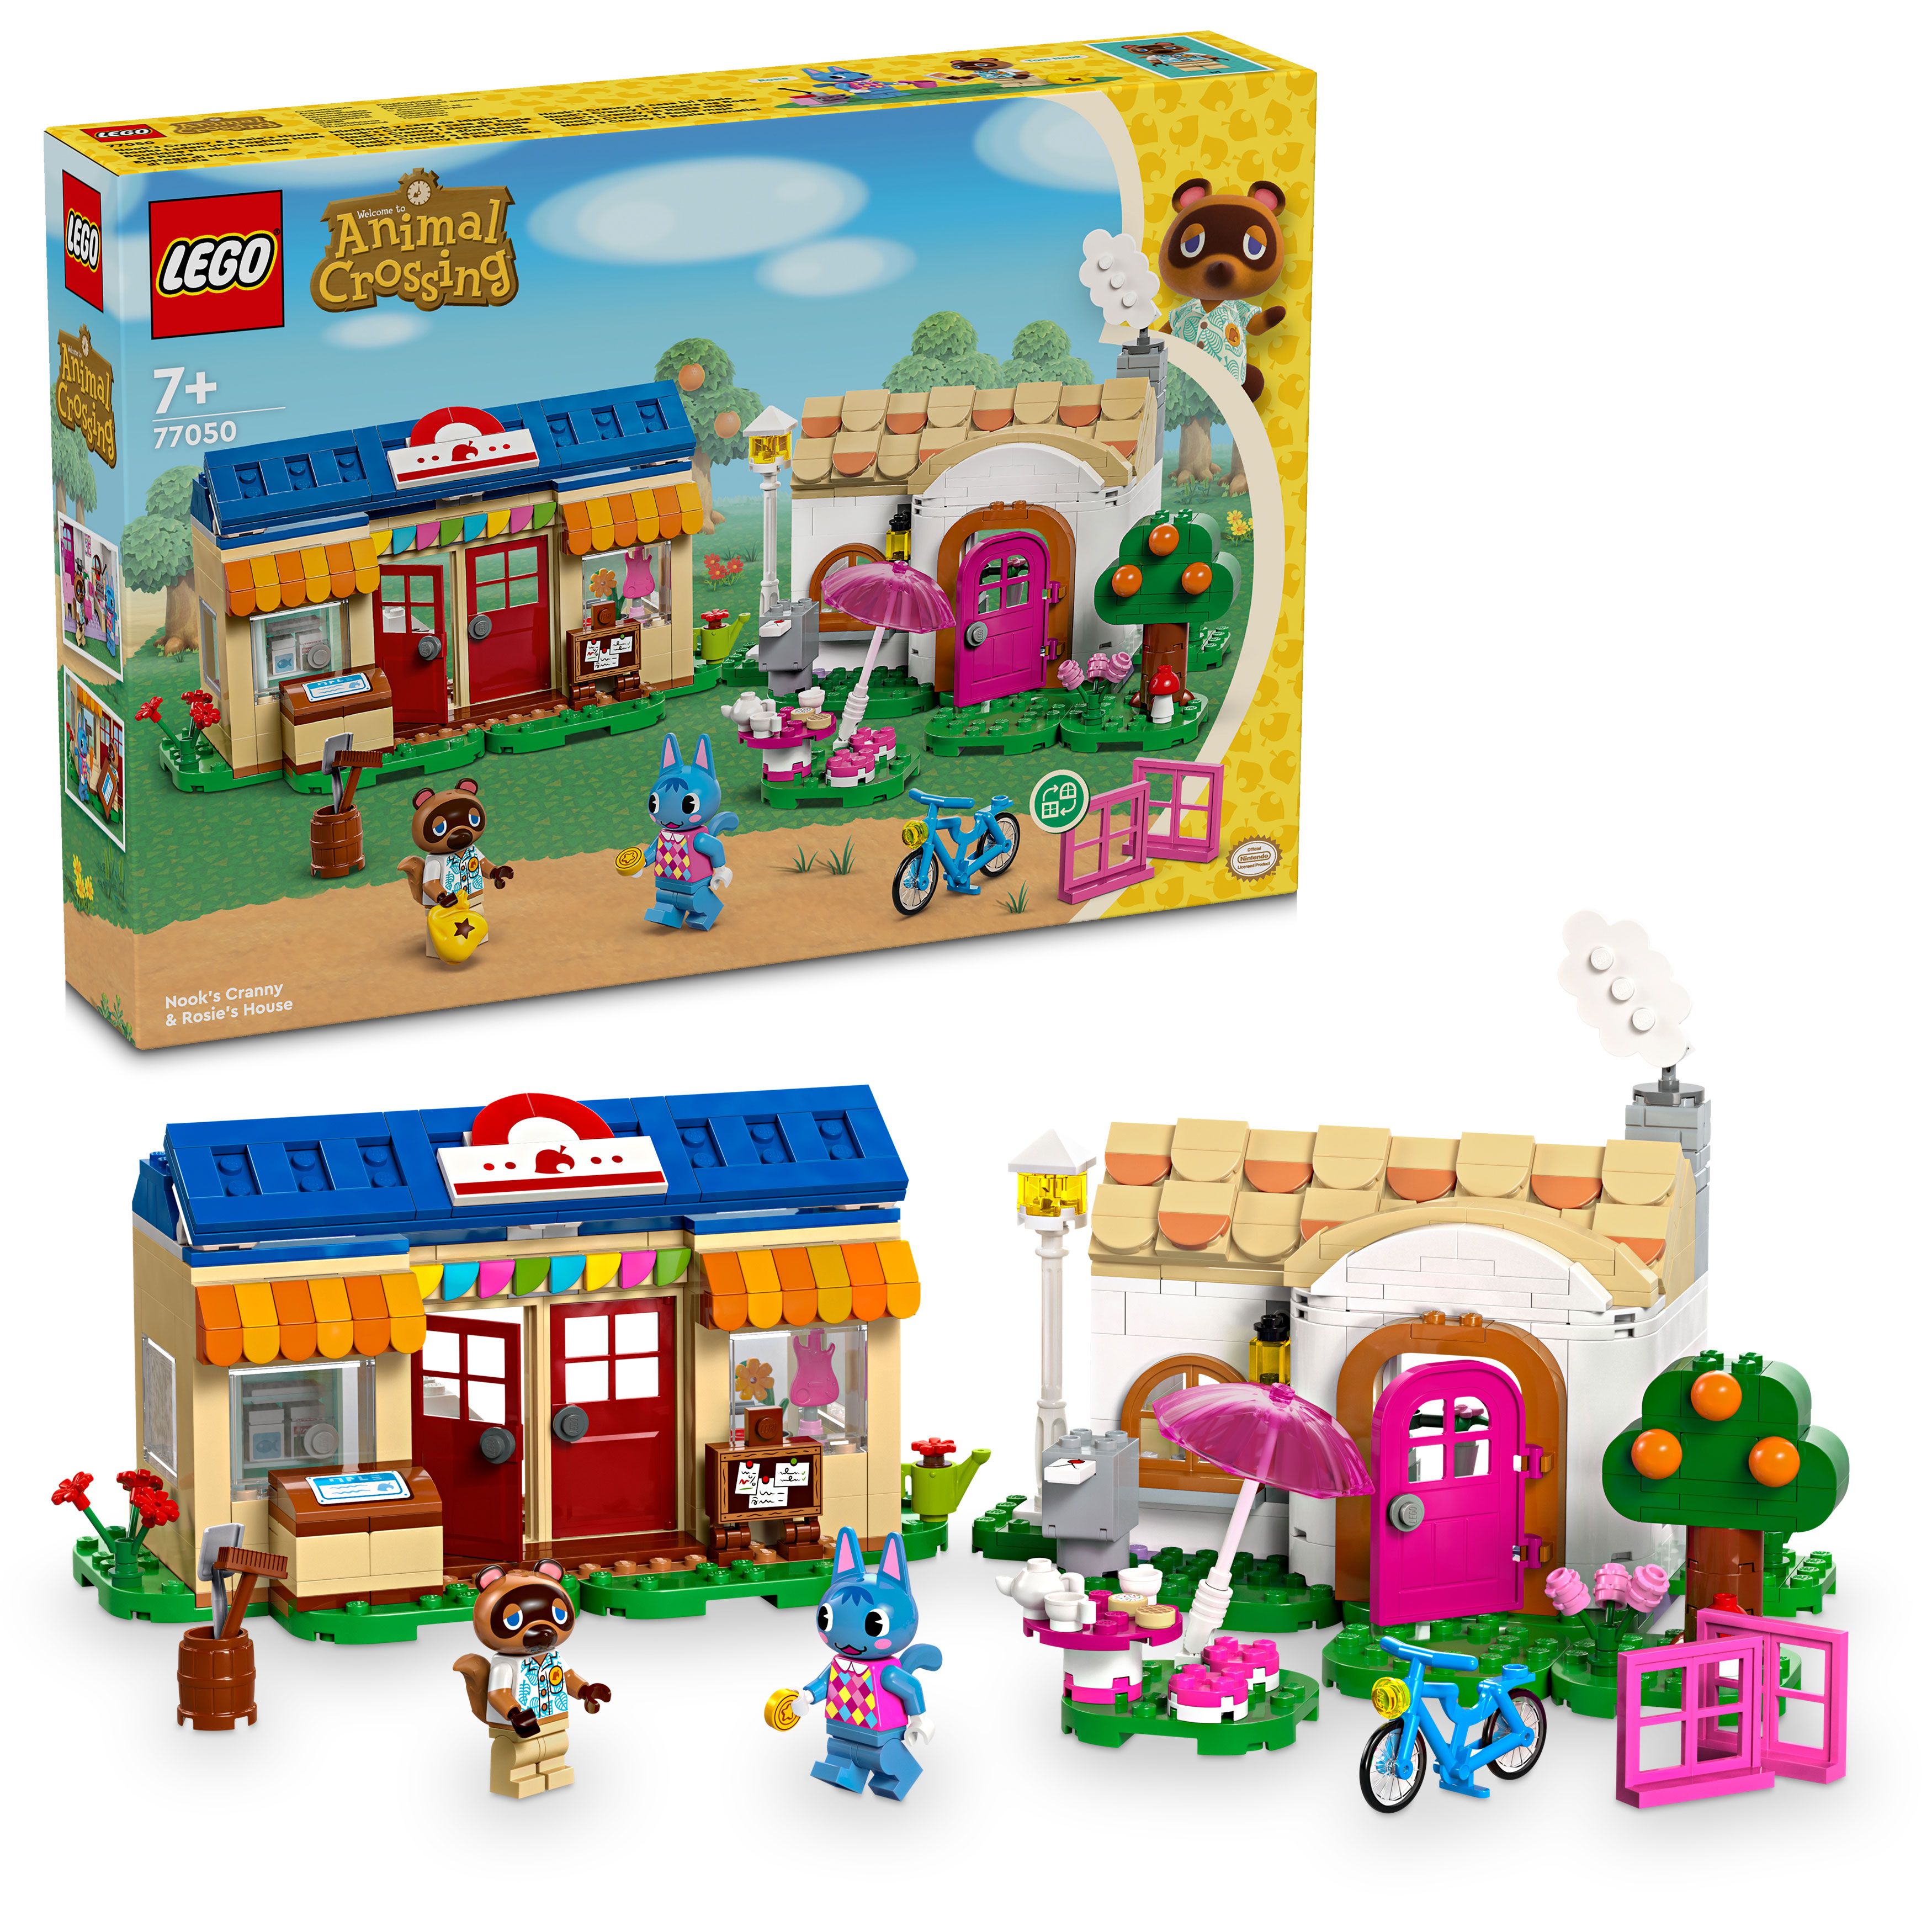 LEGO Animal Crossing - Nook's Cranny og Rosies hus (77050) - Leker